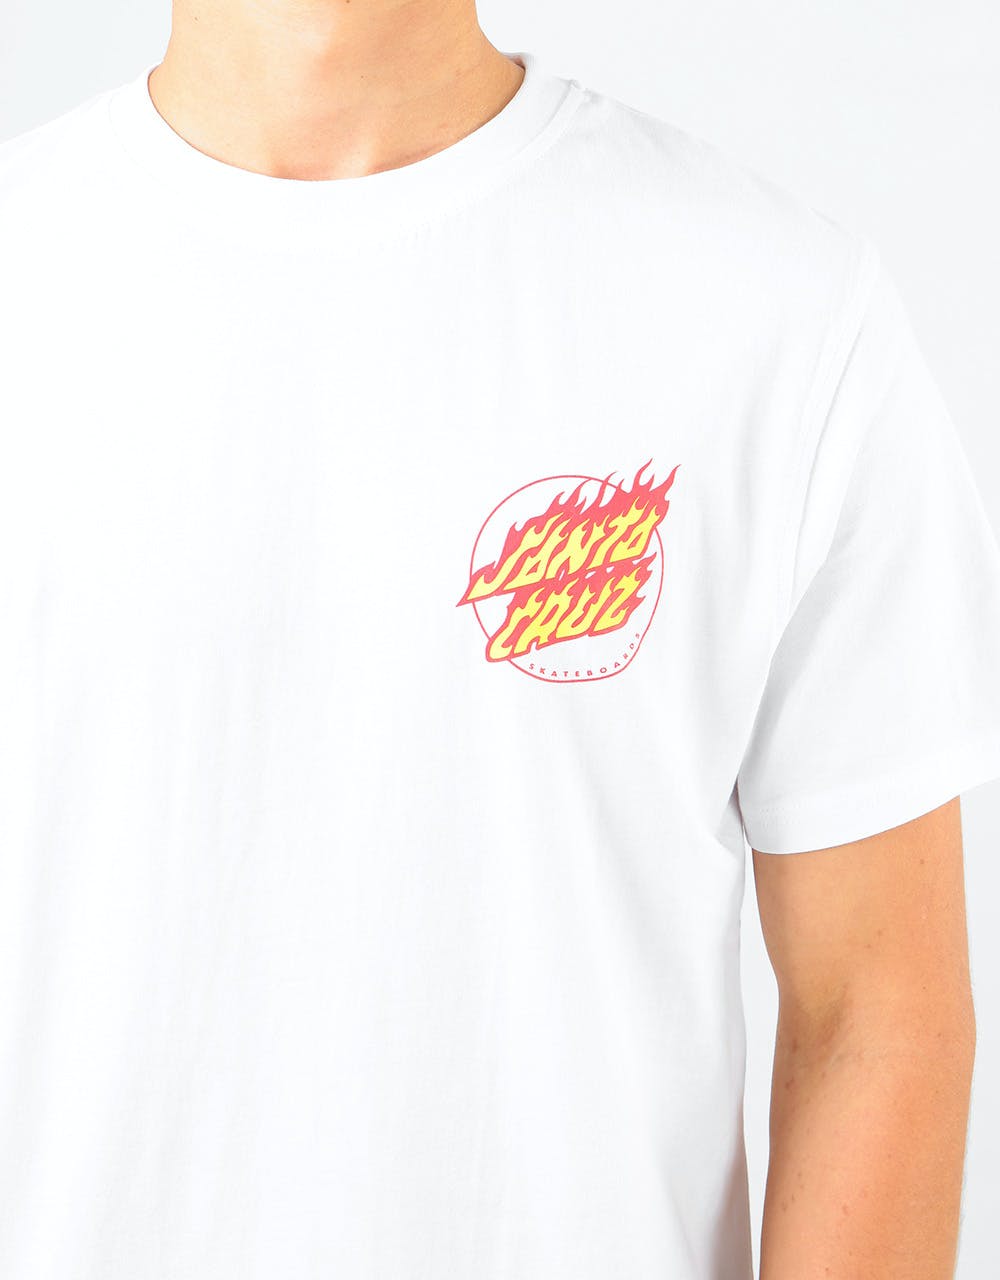 Santa Cruz Flame Hand T-Shirt - White